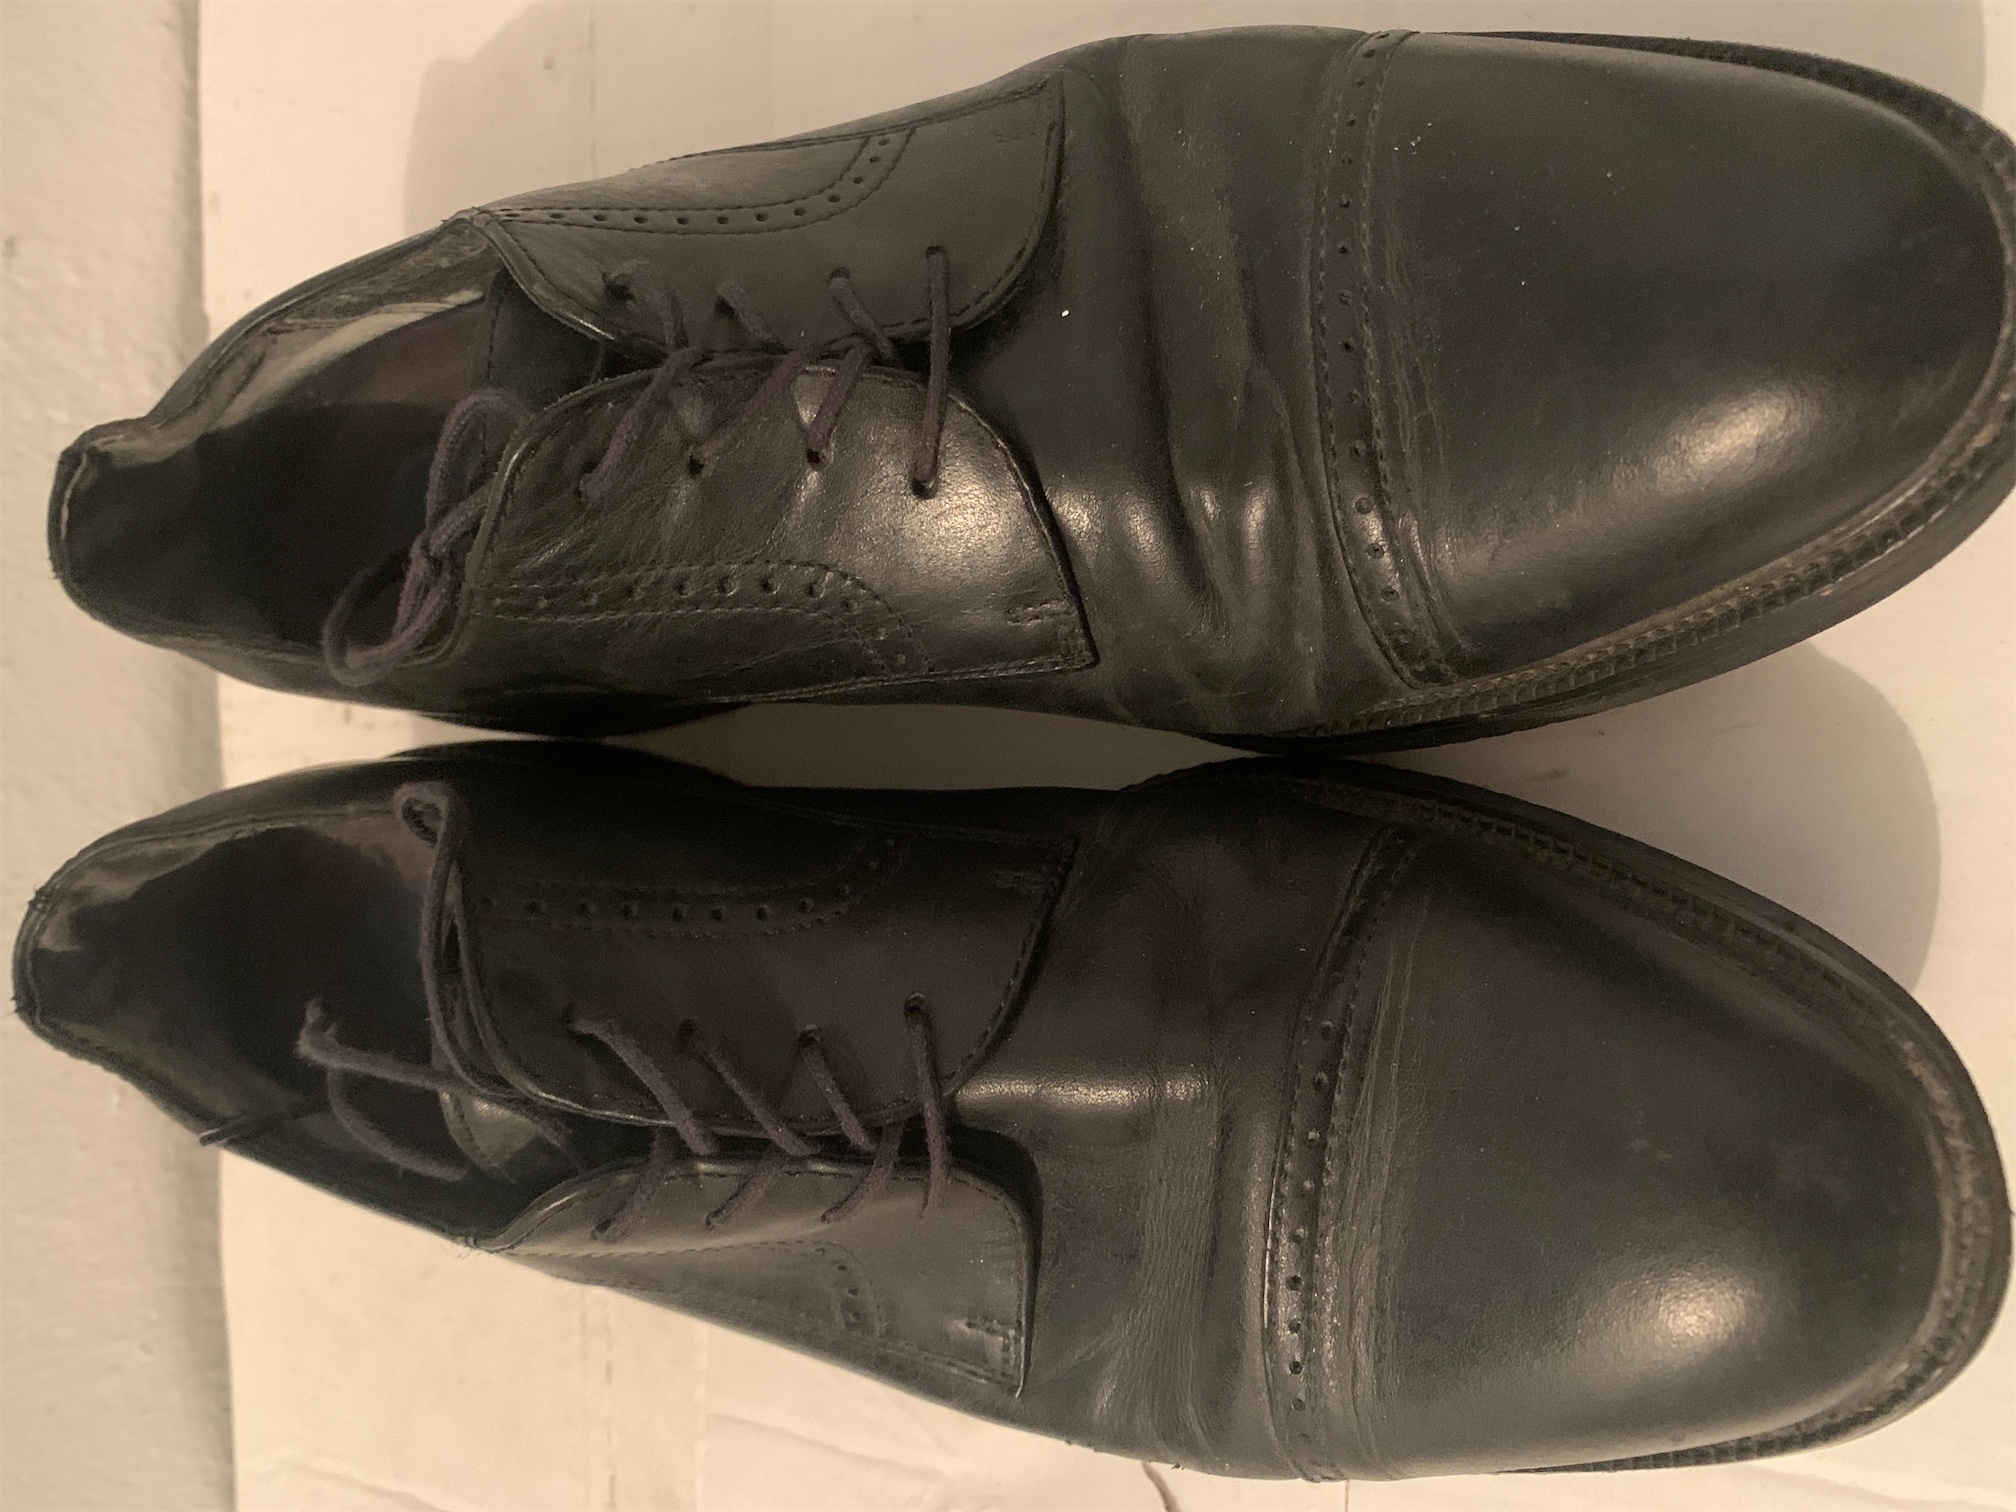 cocina - Zapatos de hombre Rockport size 9w color negro